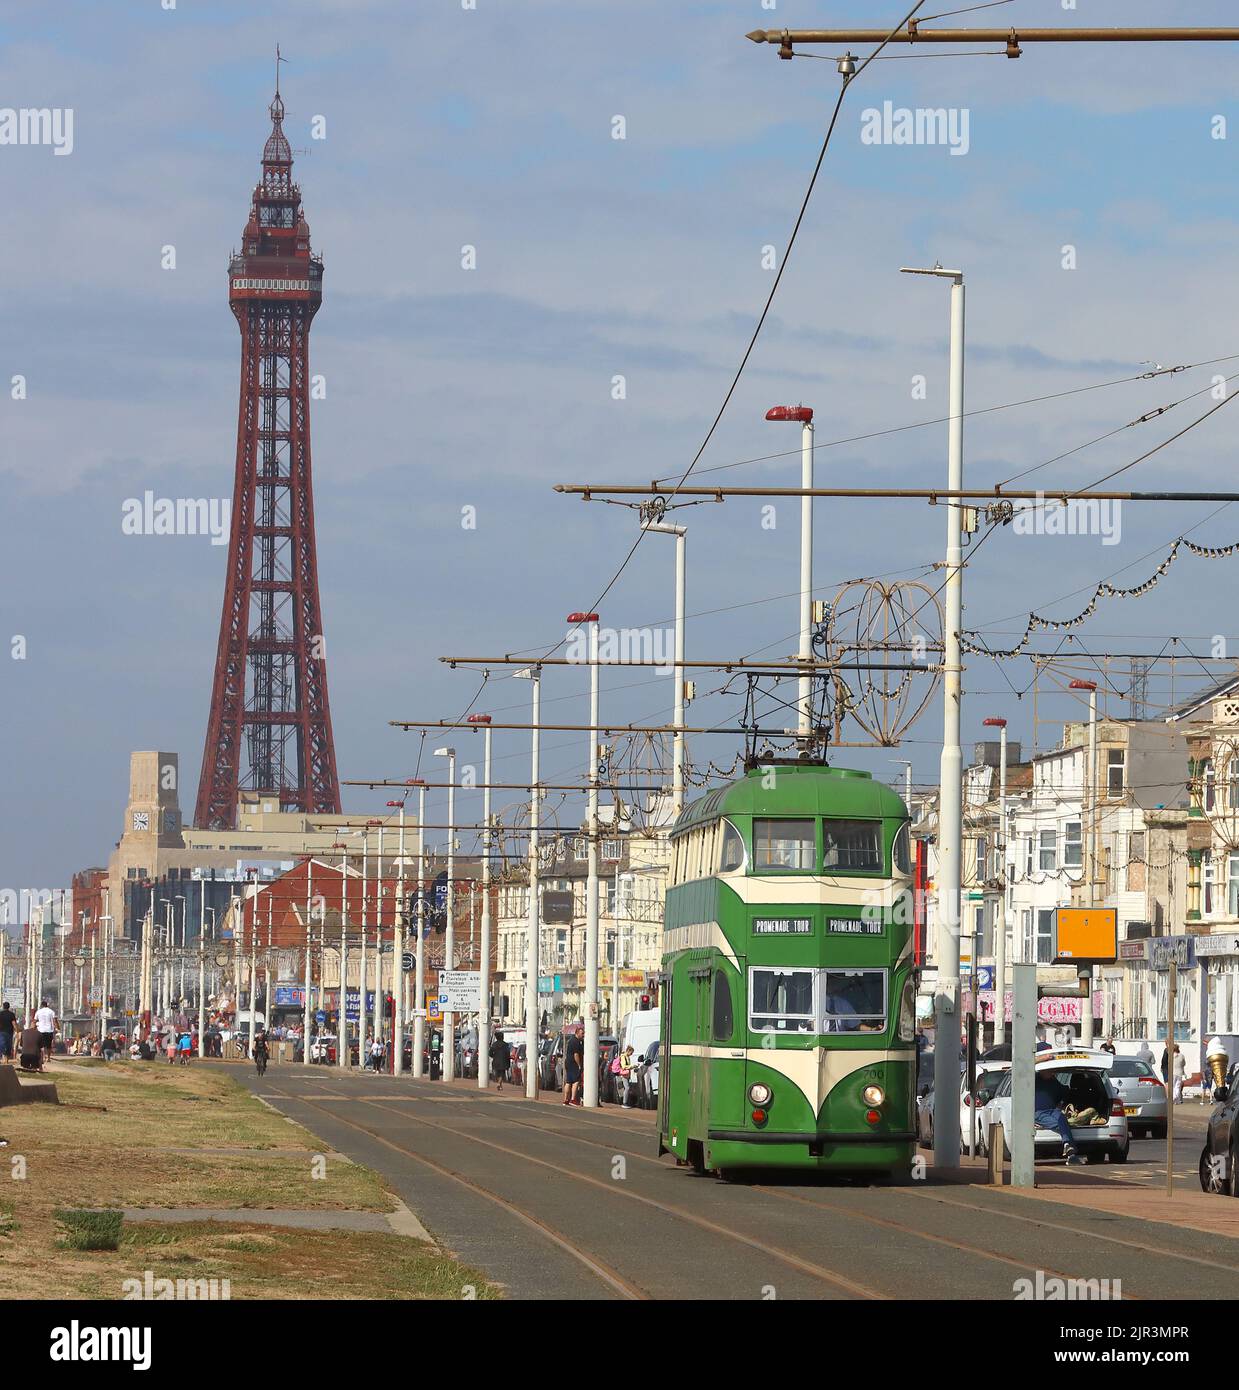 Promenade et tour de Blackpool avec un 1930s historique vert et crème English Electric Balloon tramway numéro 700, bord de mer du Lancashire, Angleterre, Royaume-Uni Banque D'Images